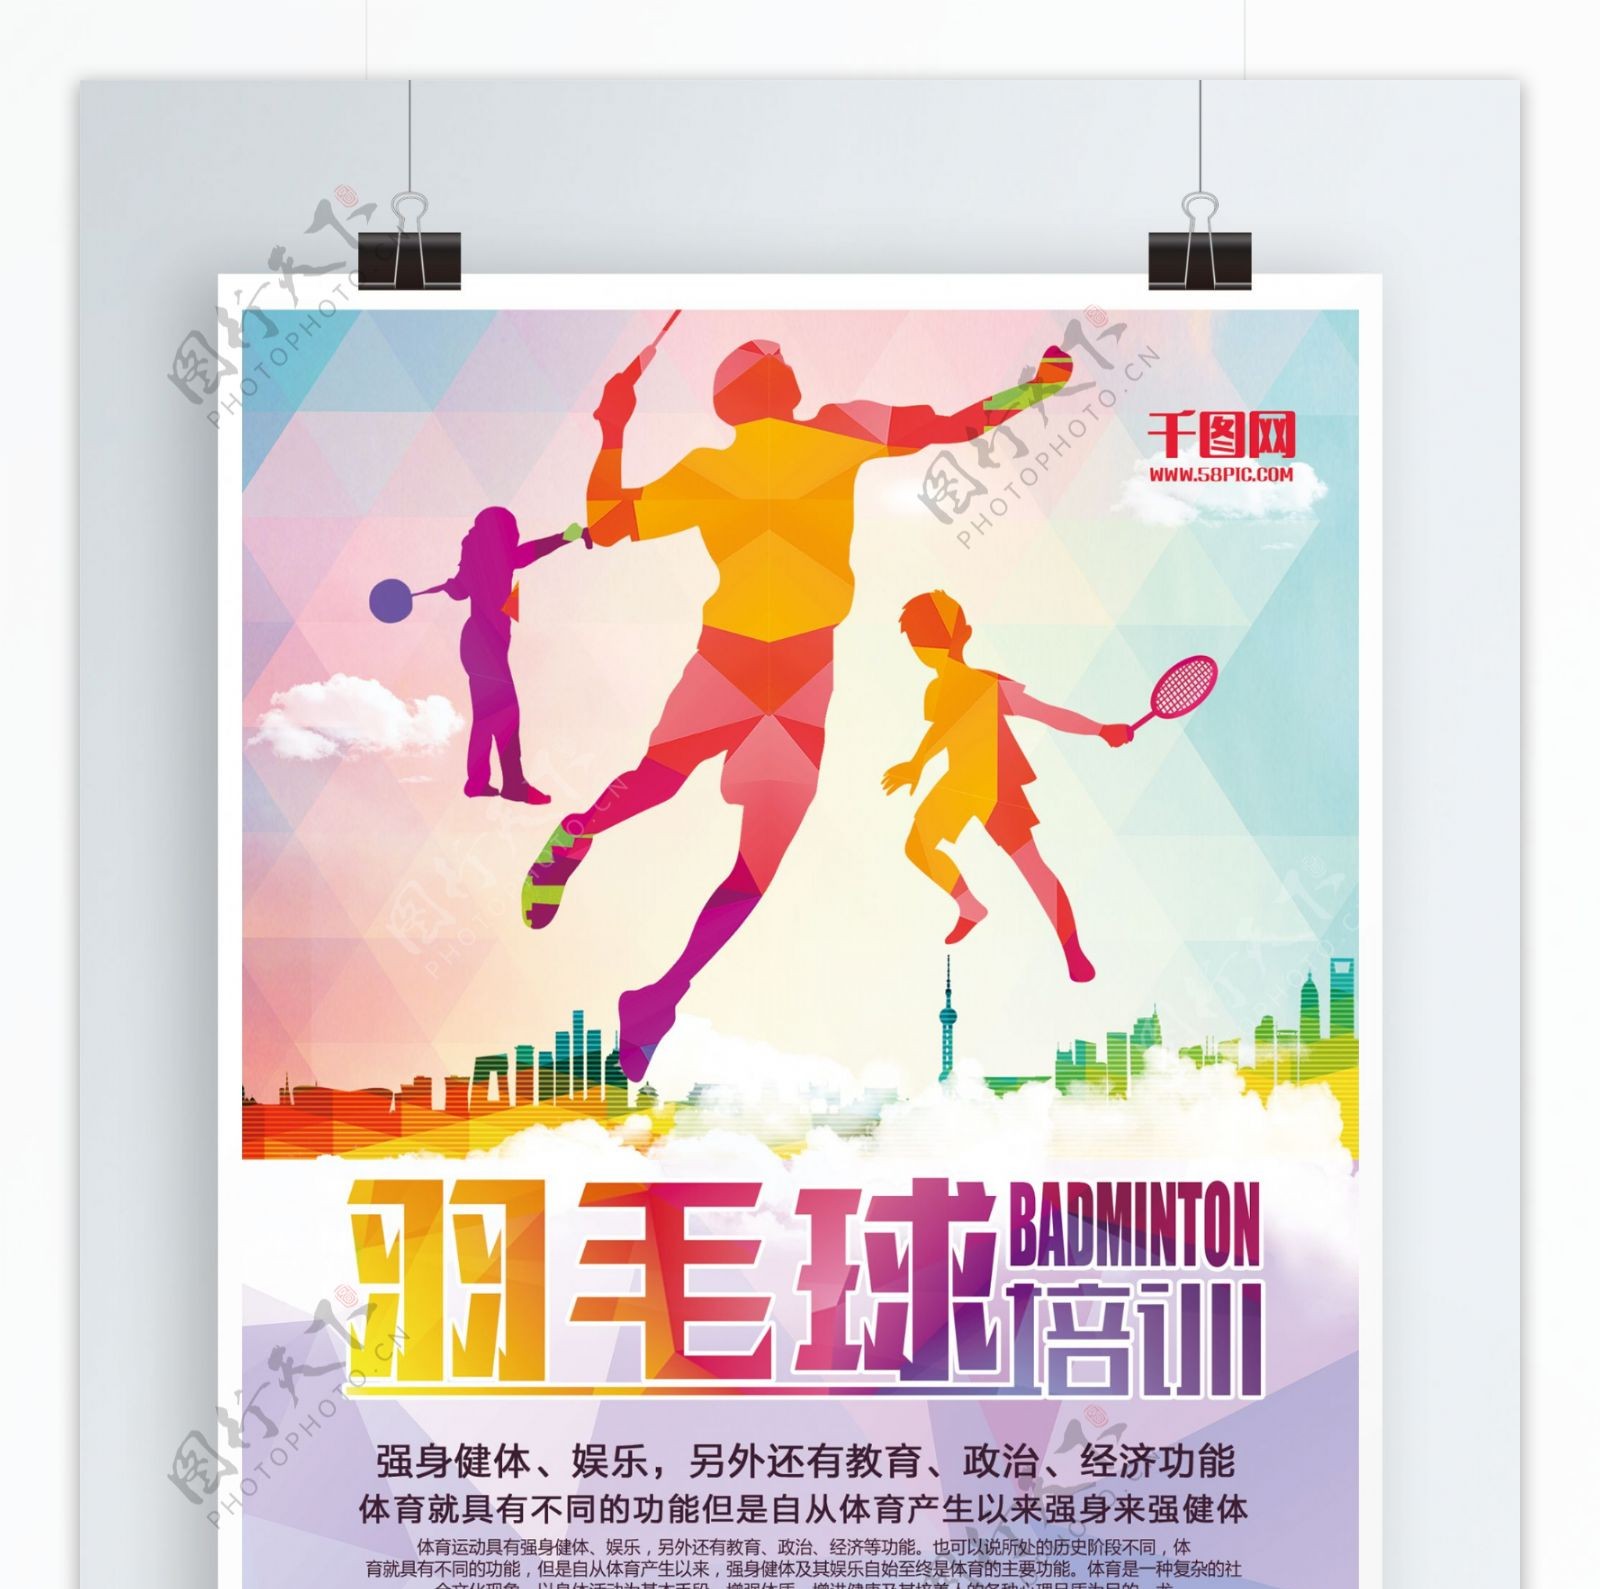 羽毛球体育运动海报